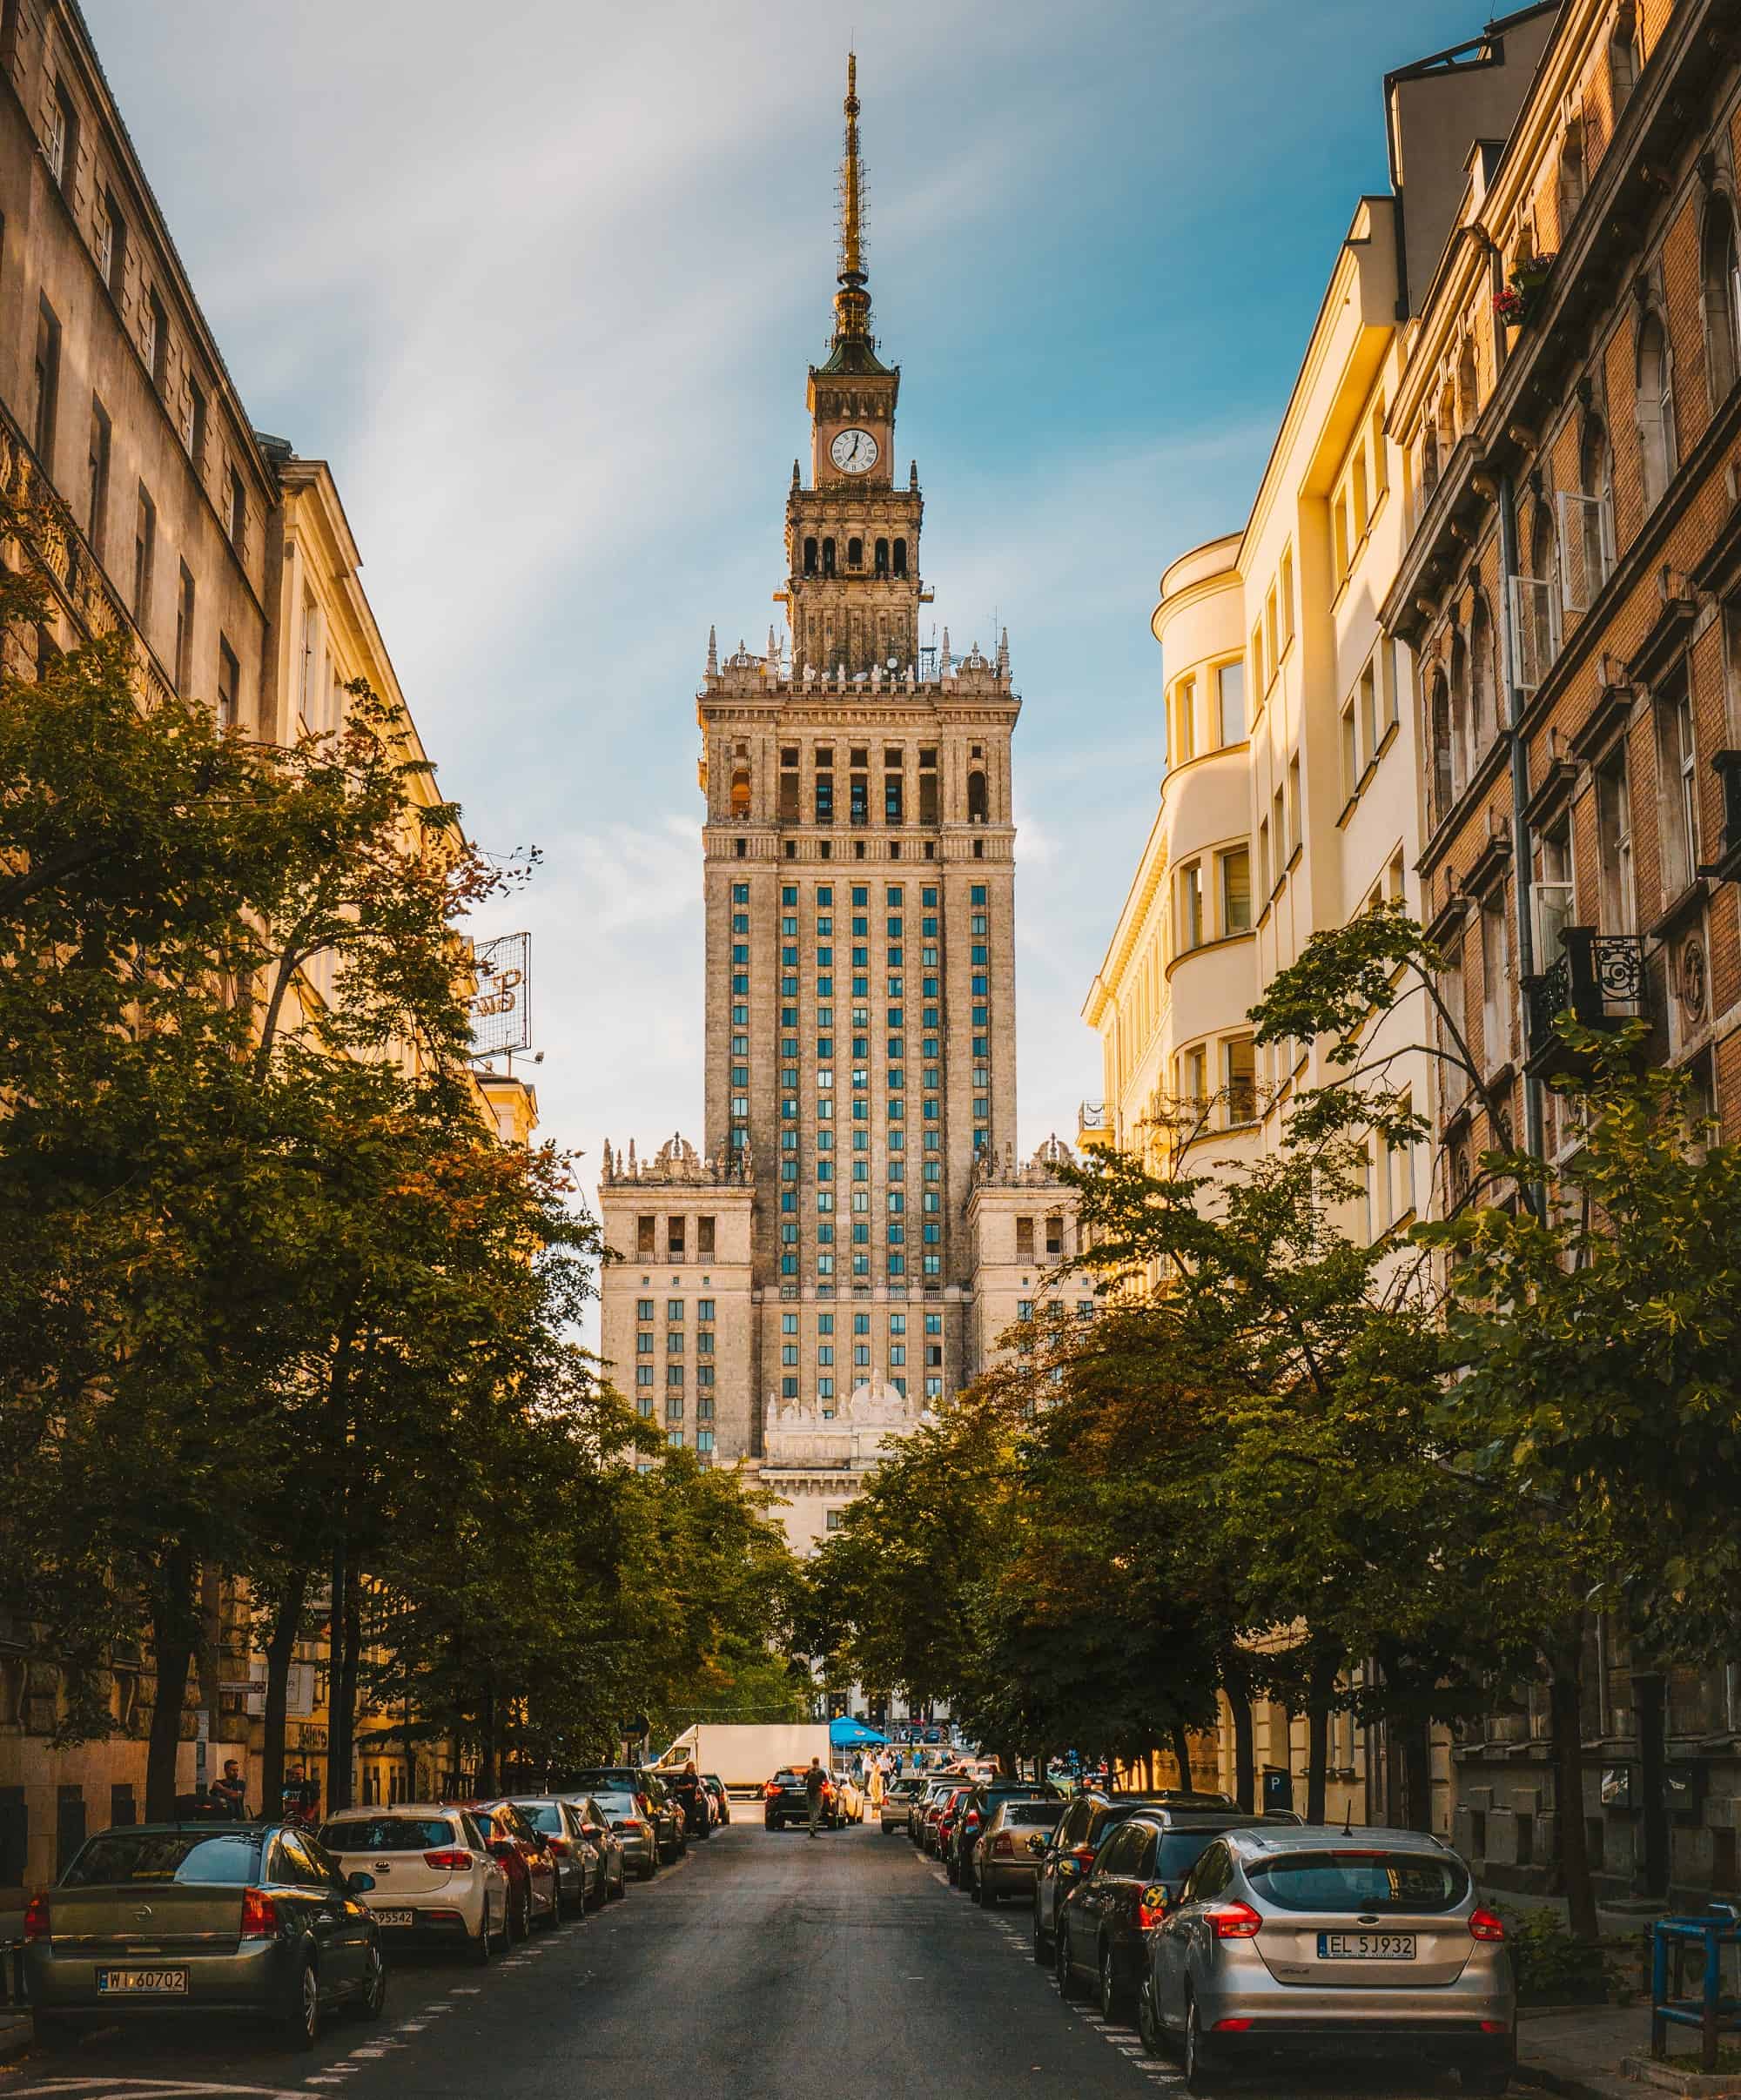 Warszawa znalazła się w pierwszej dziesiątce miast przyszłości! To wielkie wyróżnienie